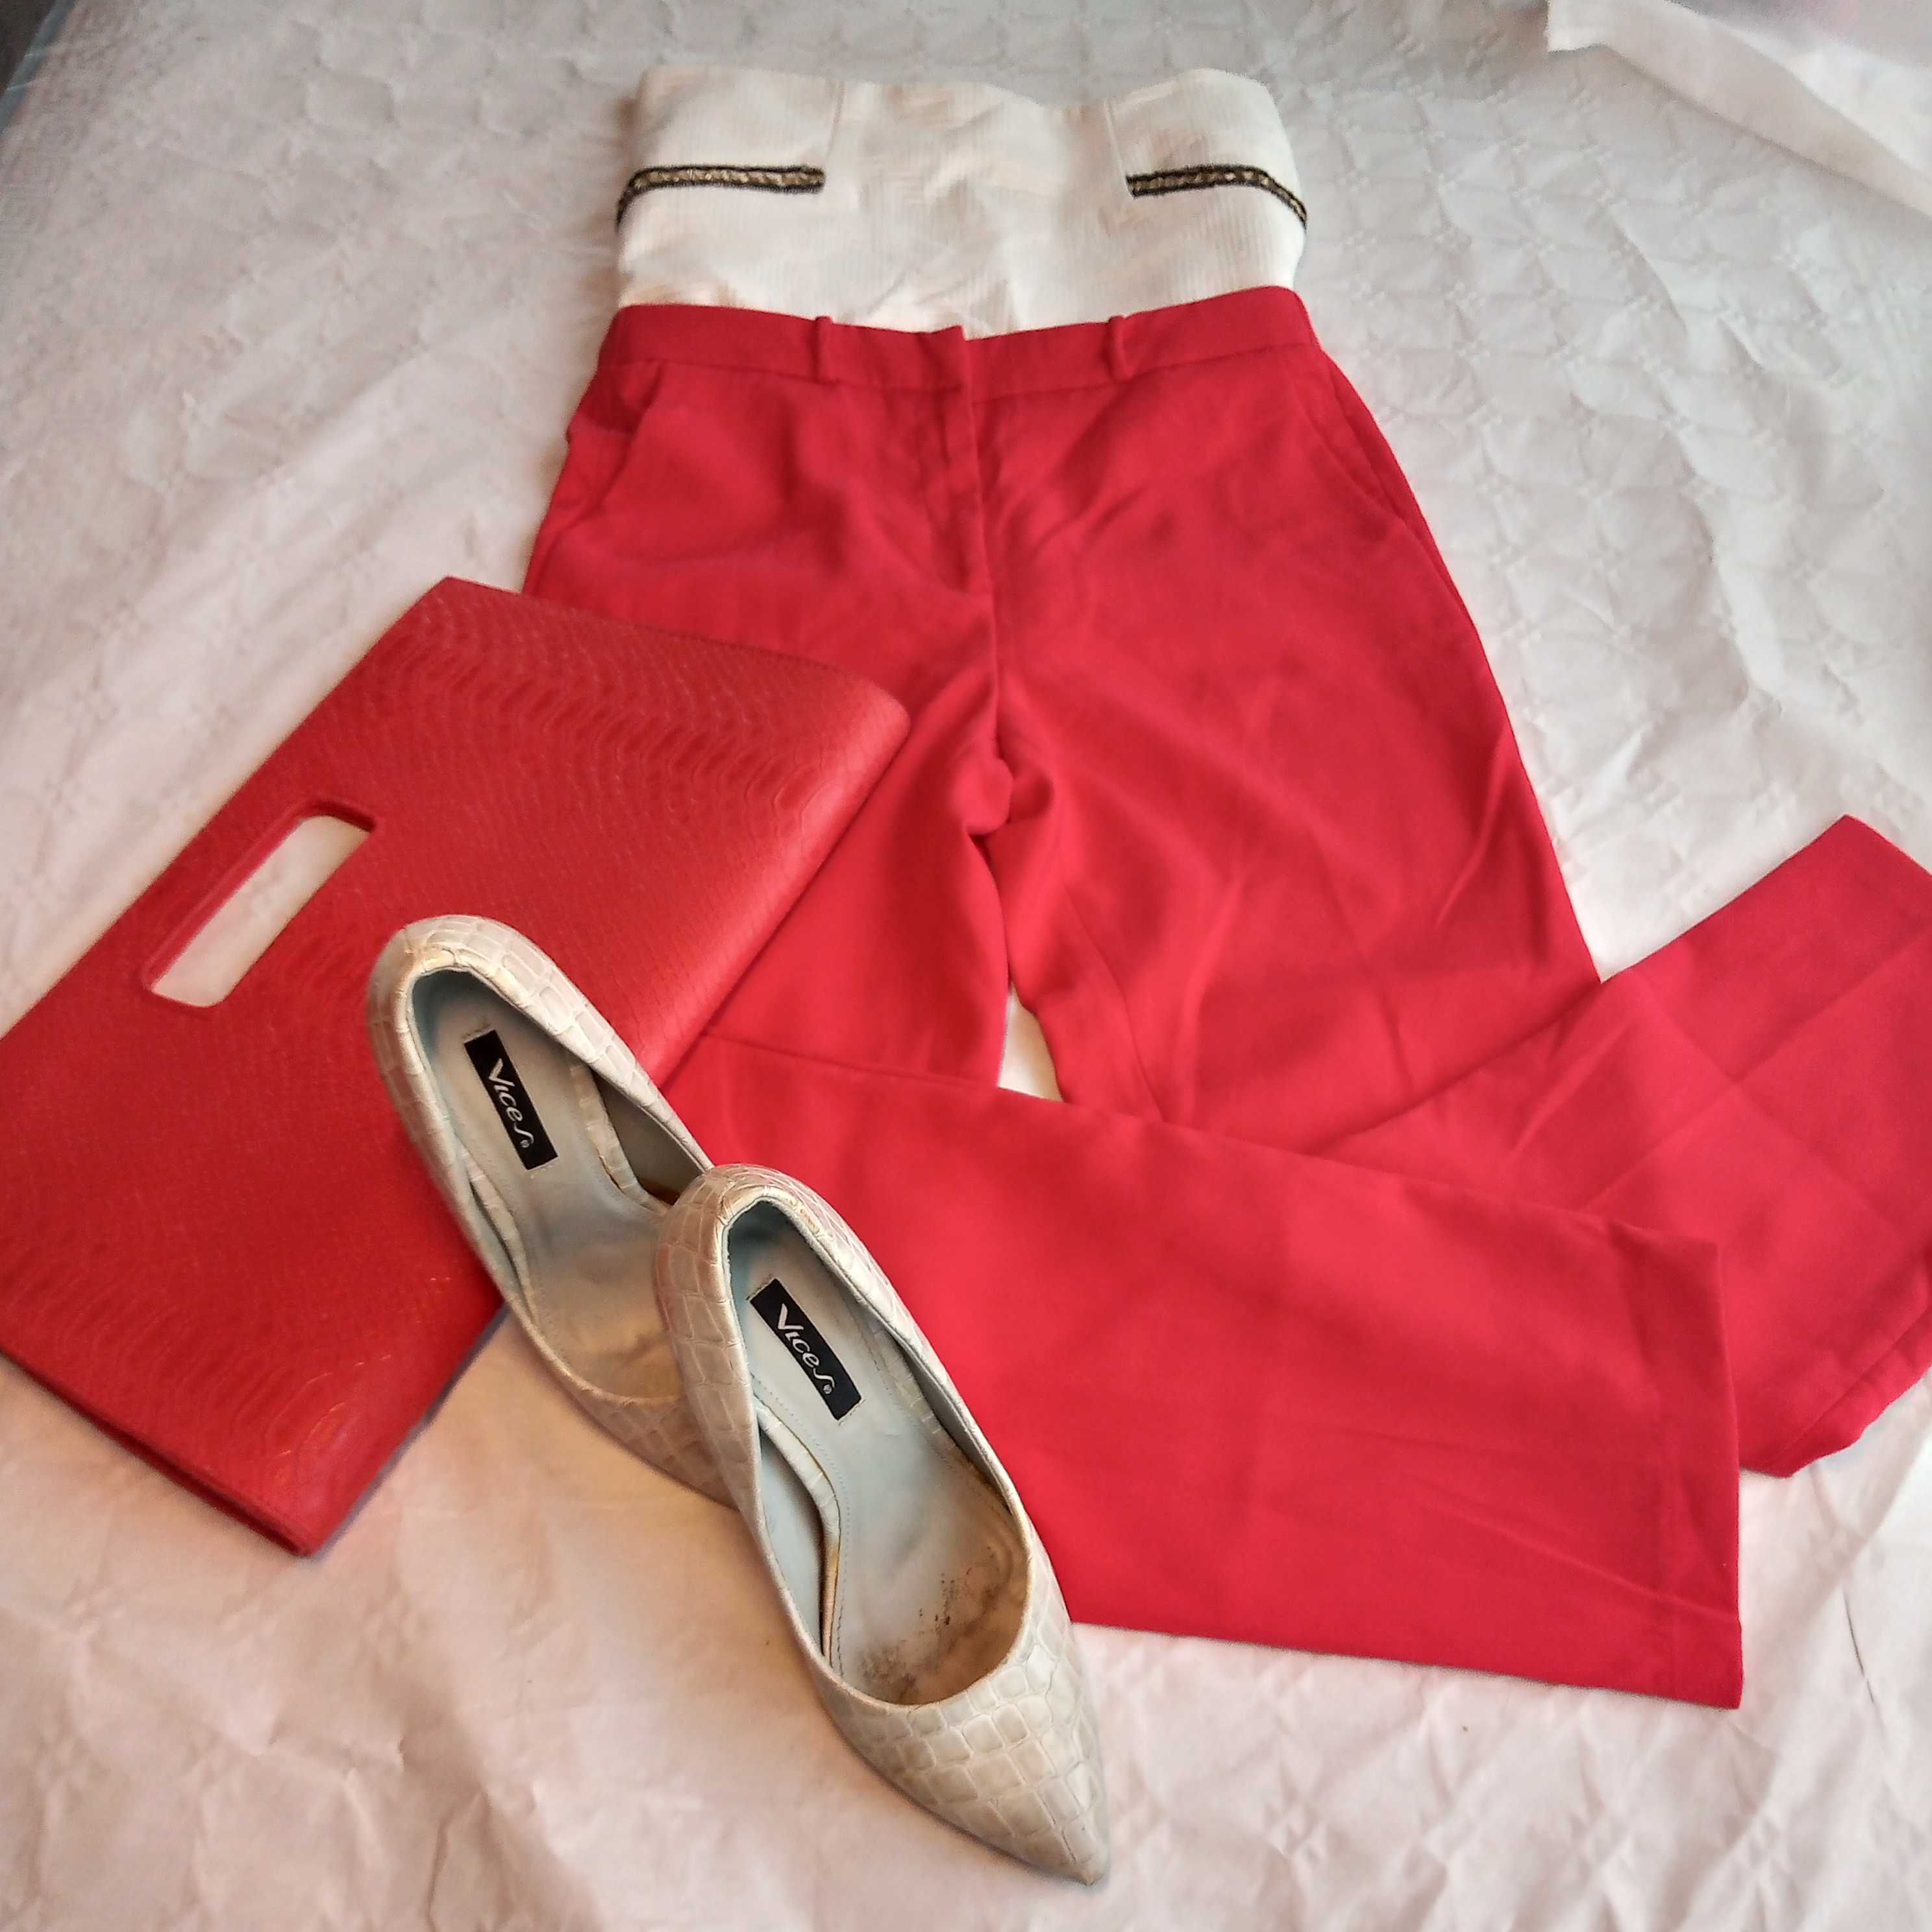 spodnie czerwone